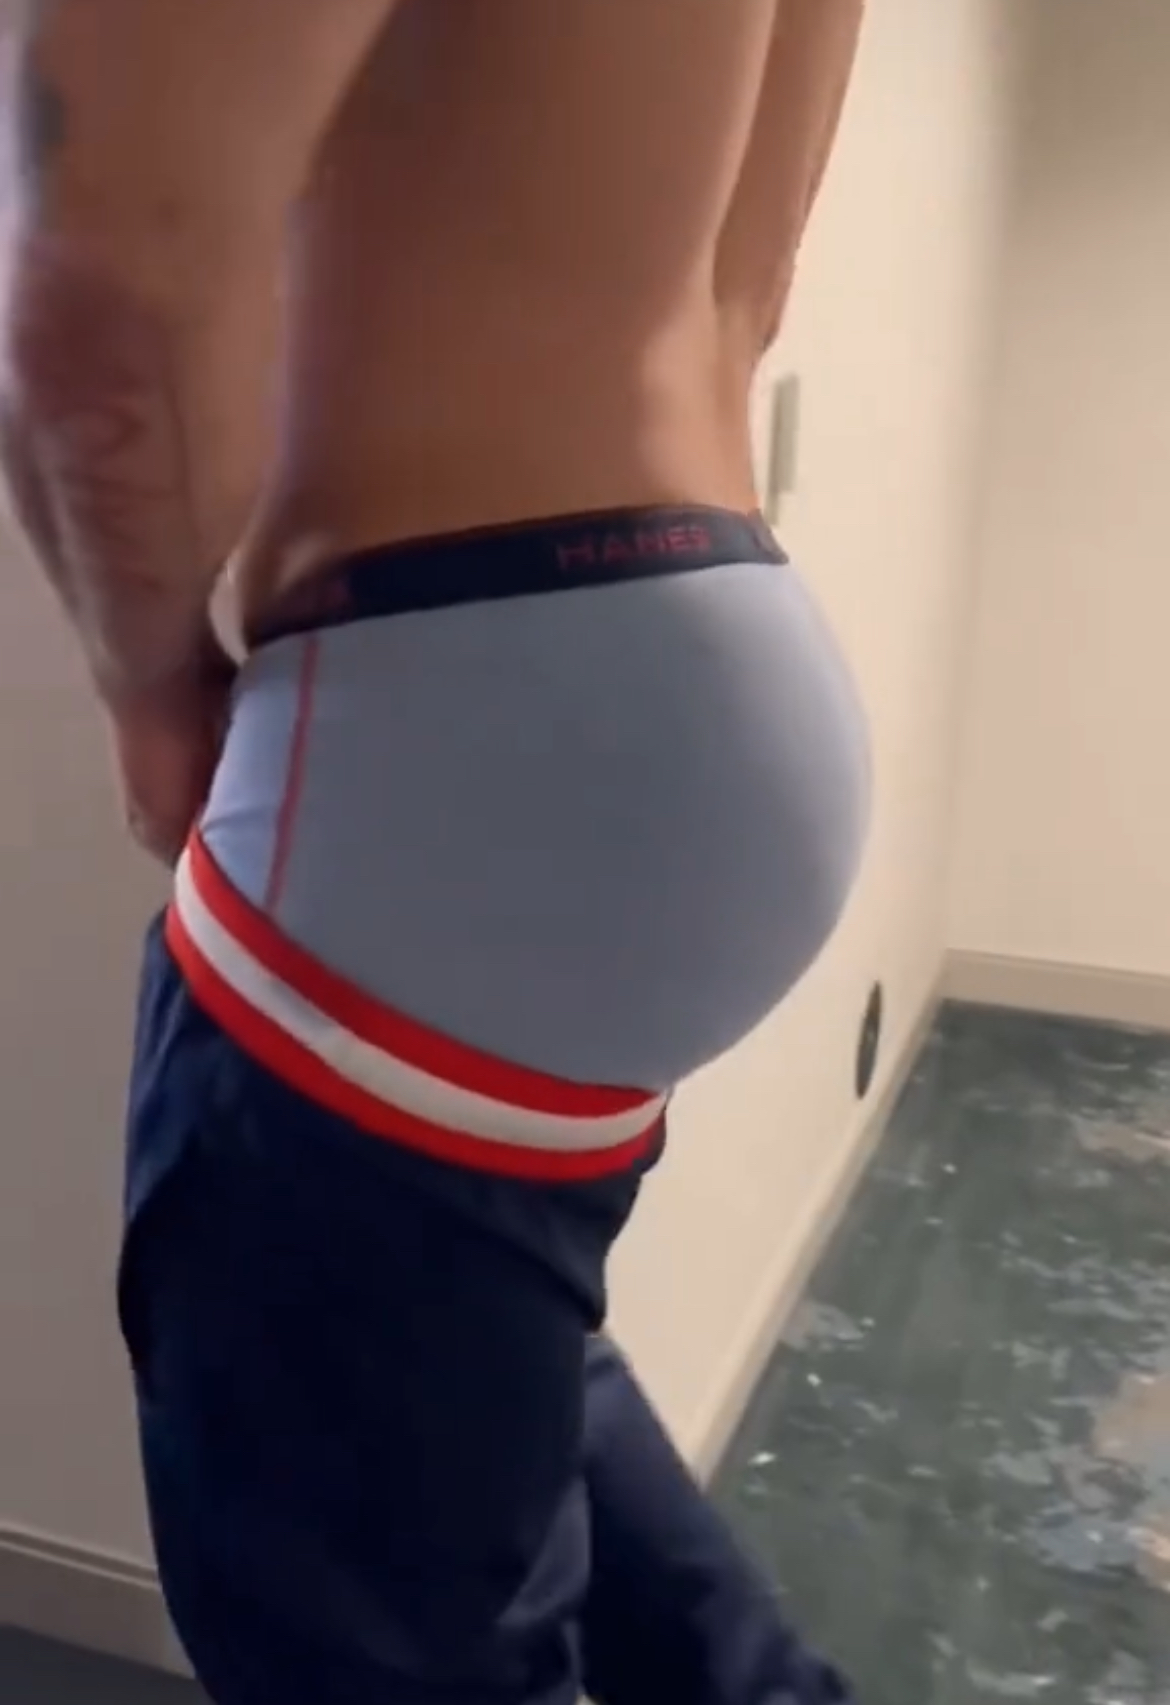 Ass for days - video 4